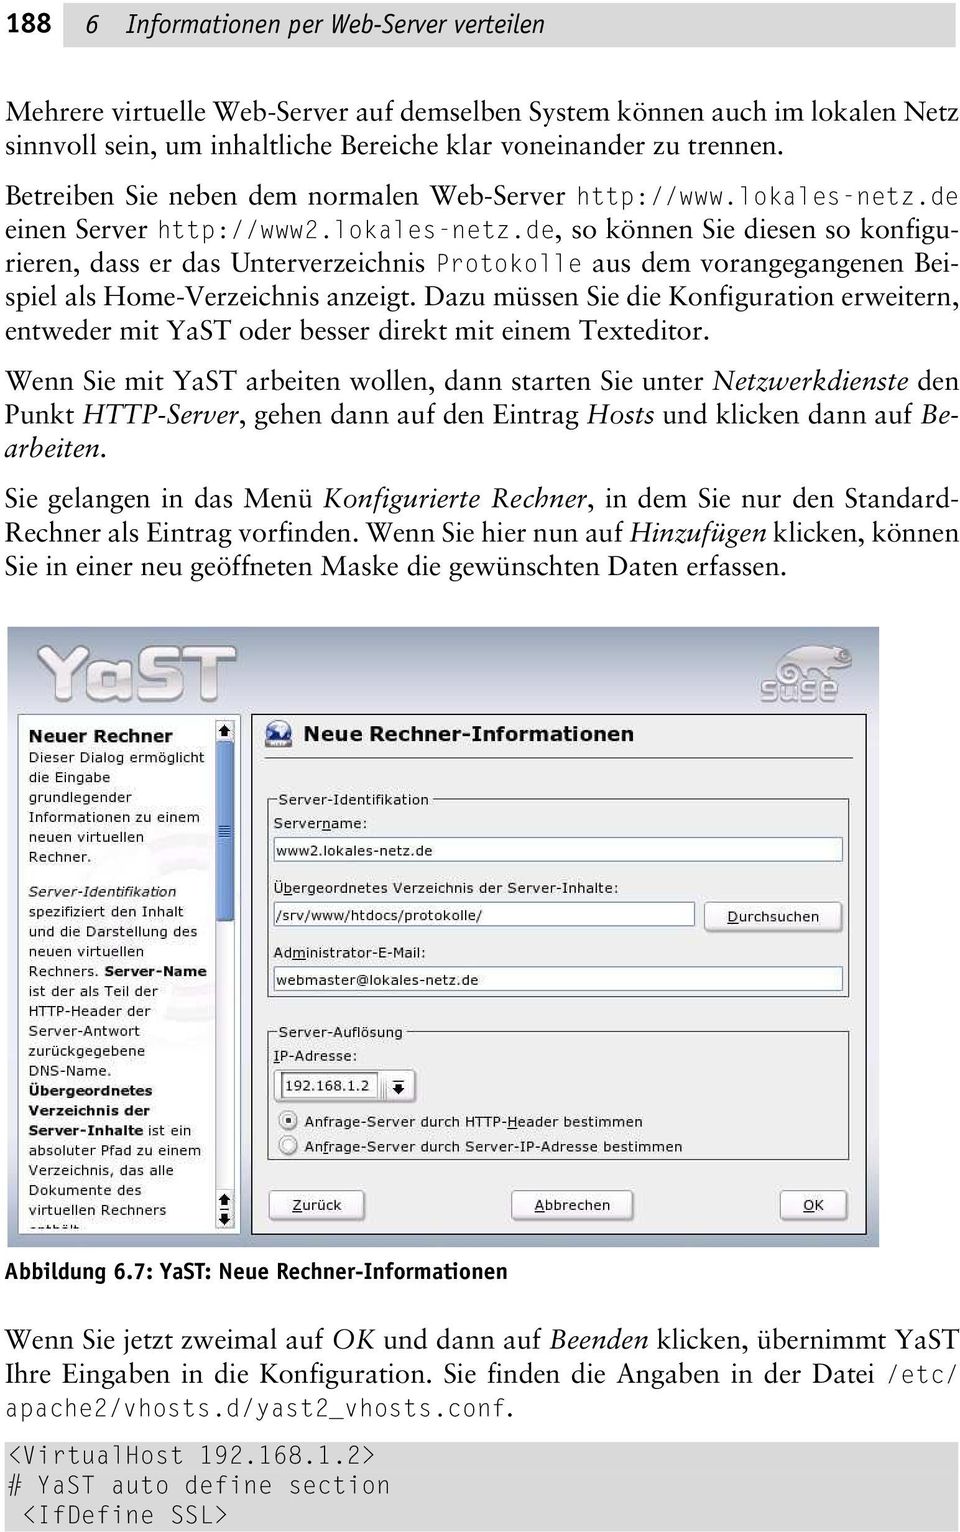 de einen Server http://www2.lokales-netz.de, so können Sie diesen so konfigurieren, dass er das Unterverzeichnis Protokolle aus dem vorangegangenen Beispiel als Home-Verzeichnis anzeigt.